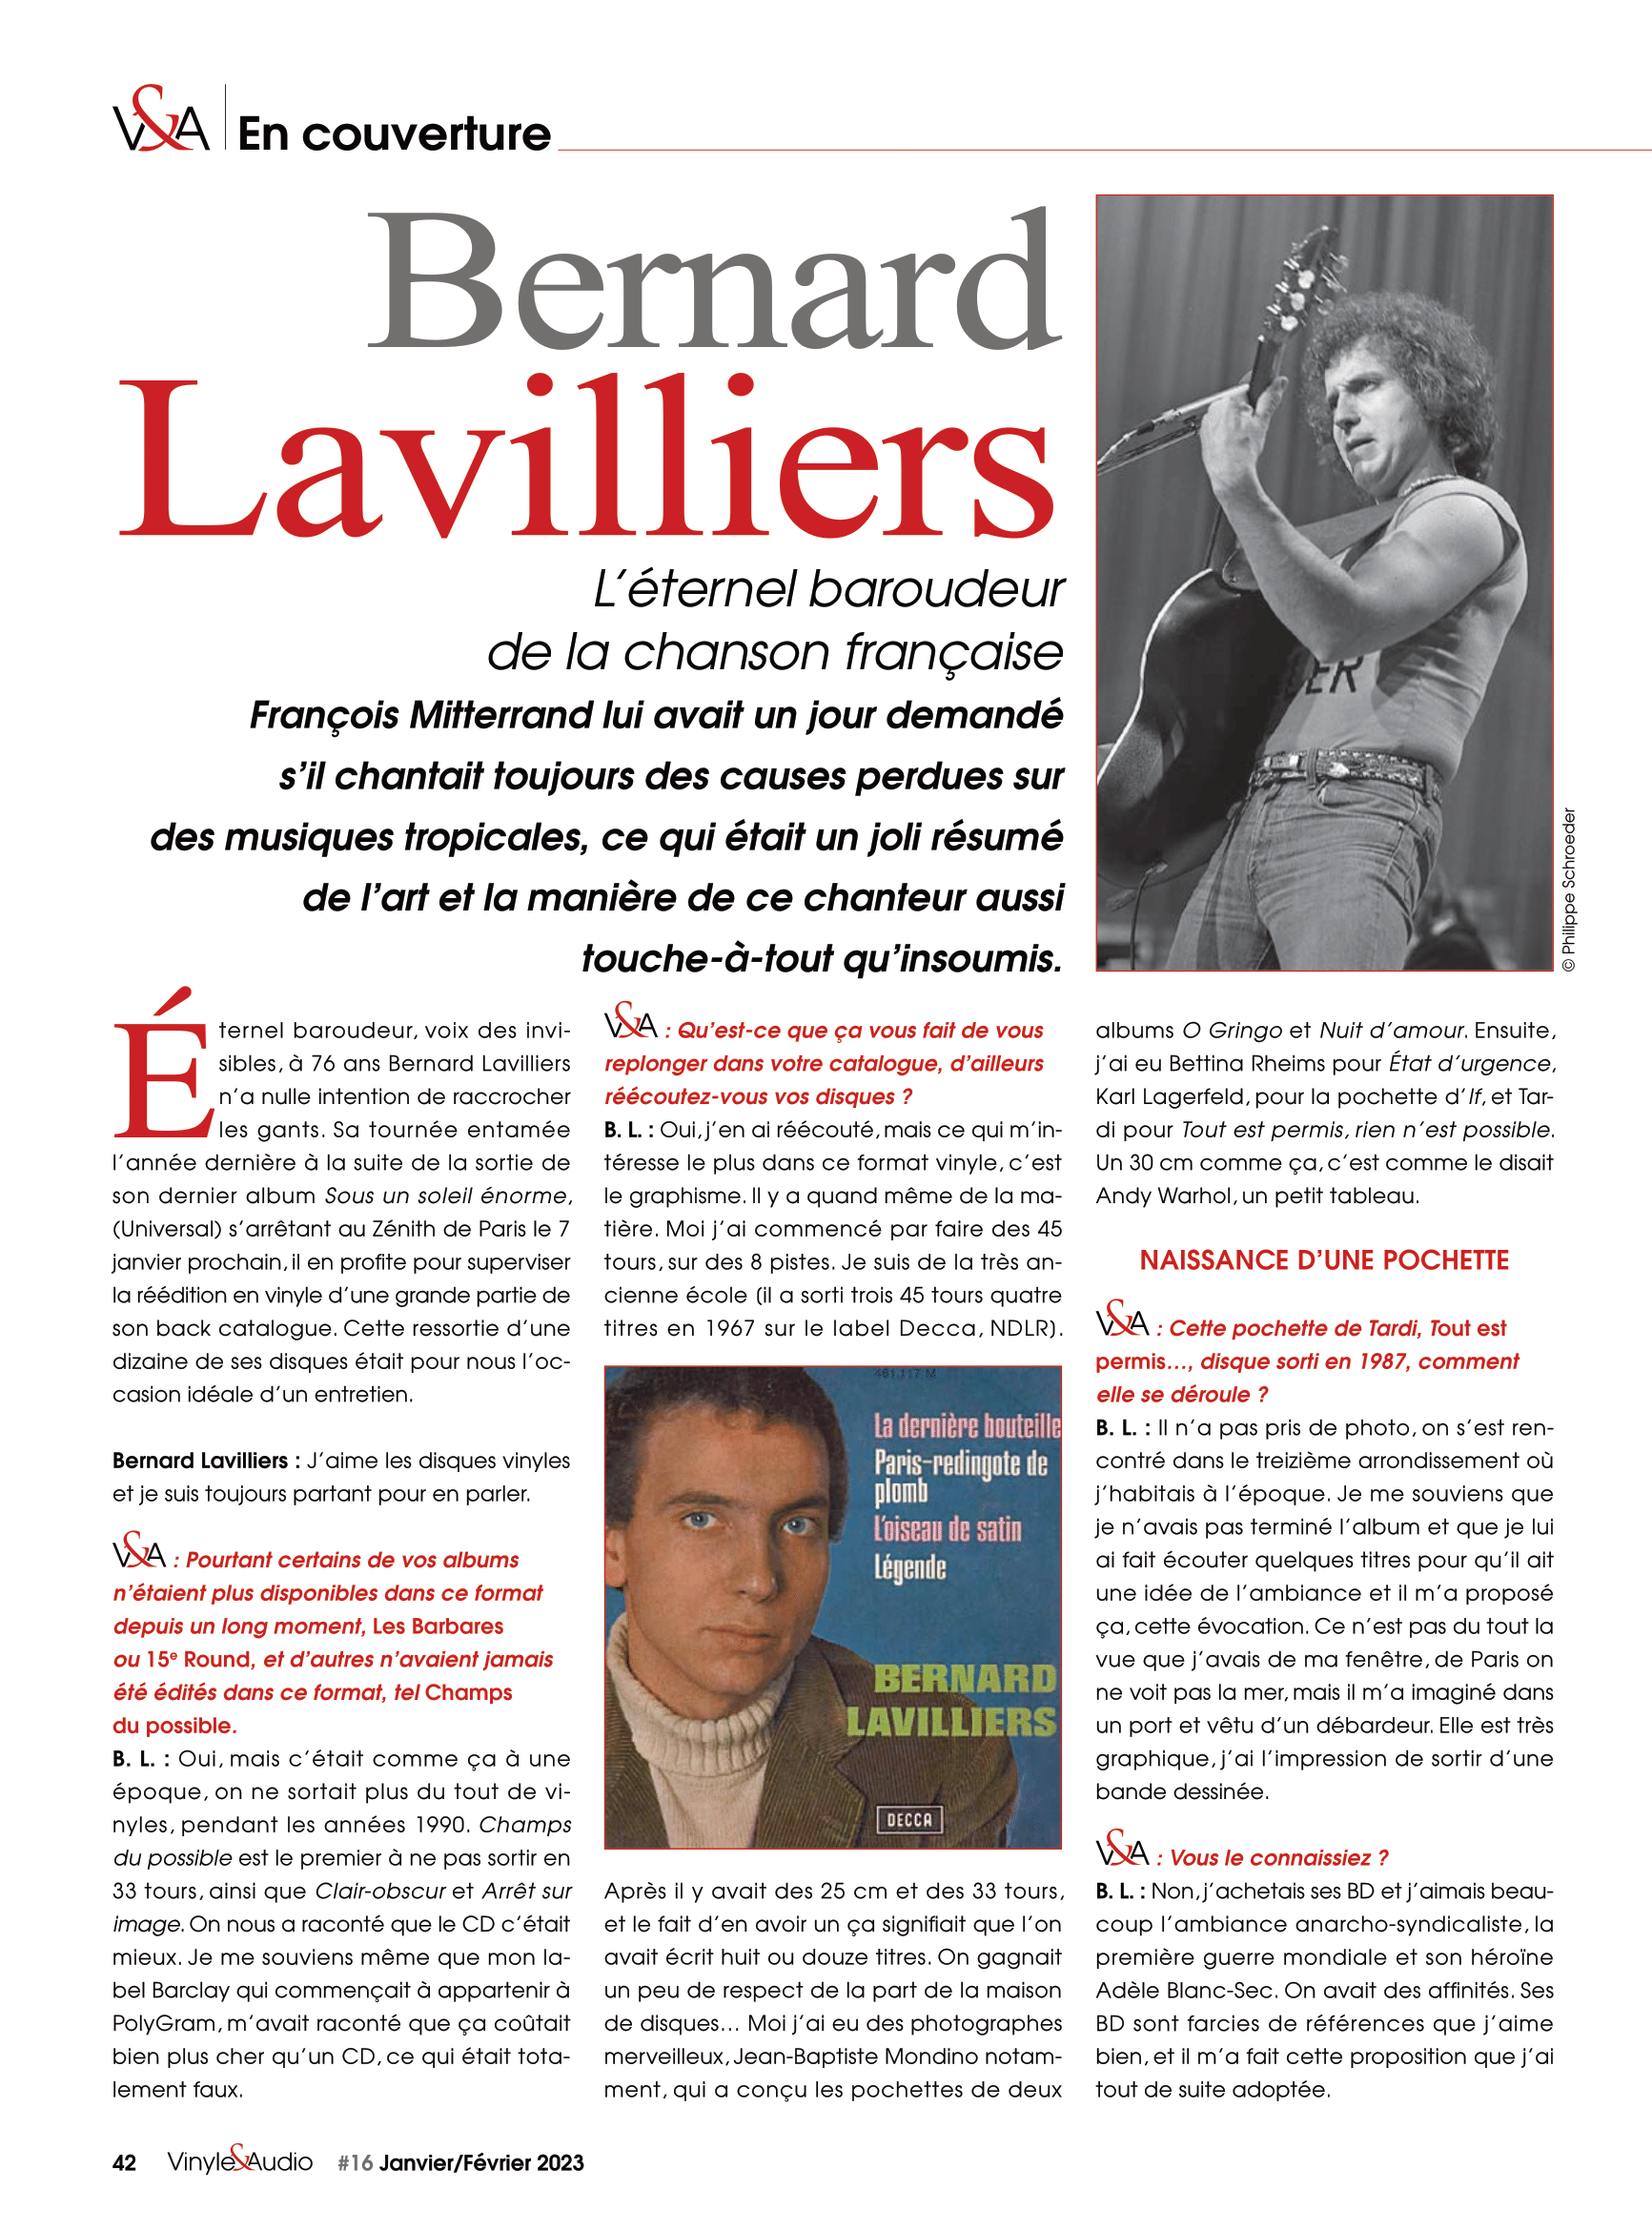 Vinyle & Audio n°16 : Bernard Lavilliers, l'éternel baroudeur de la chanson française